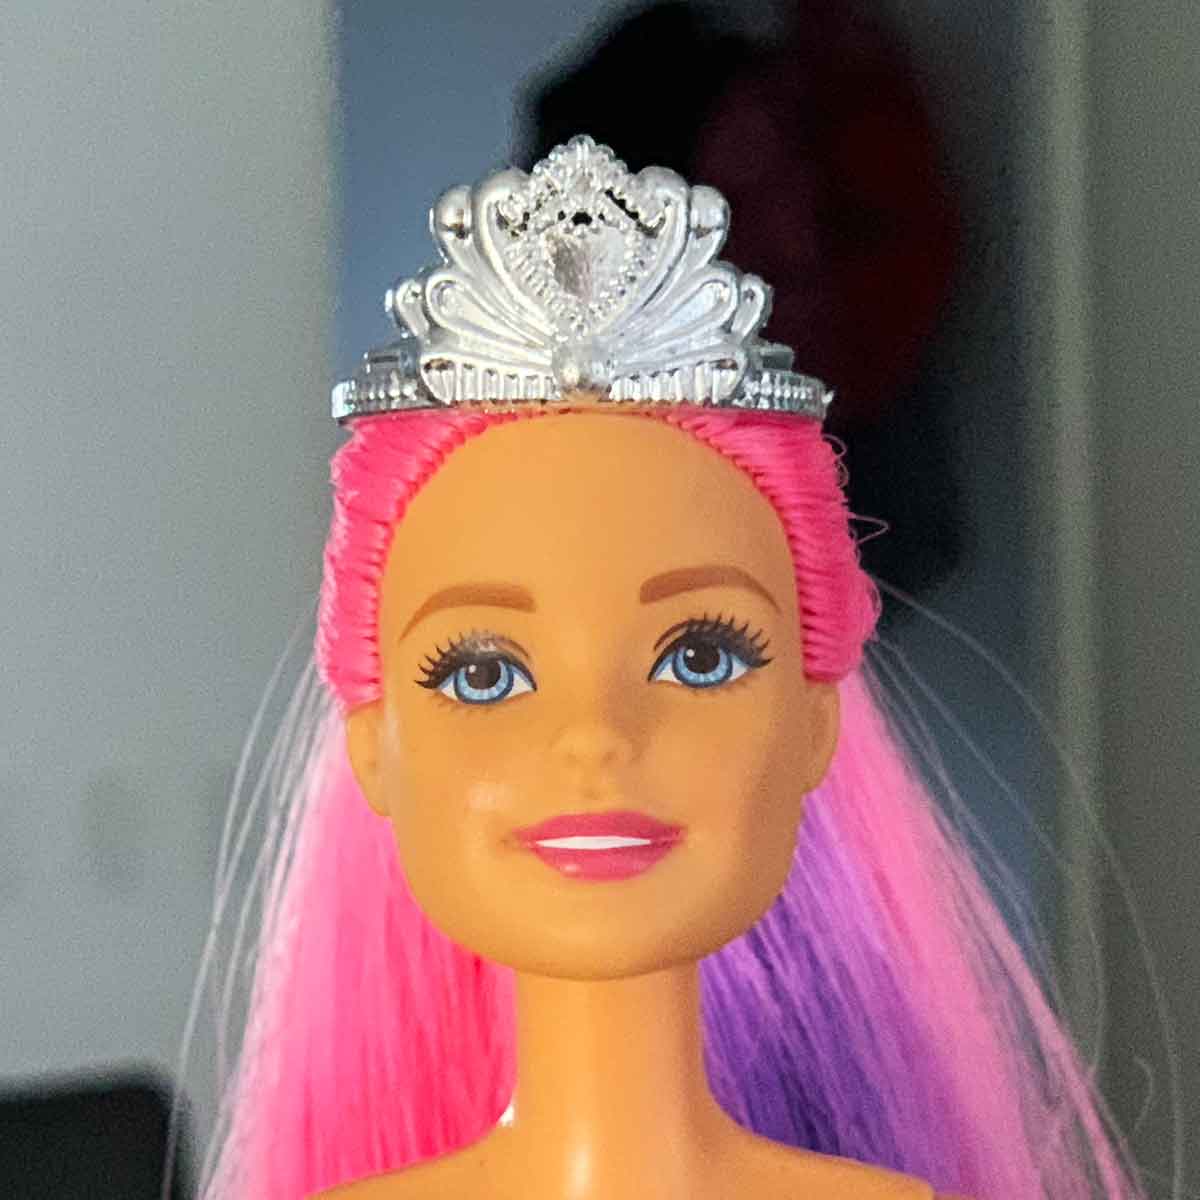 Barbie prinsessenkroon zilver met sierlijke lijnen en hart